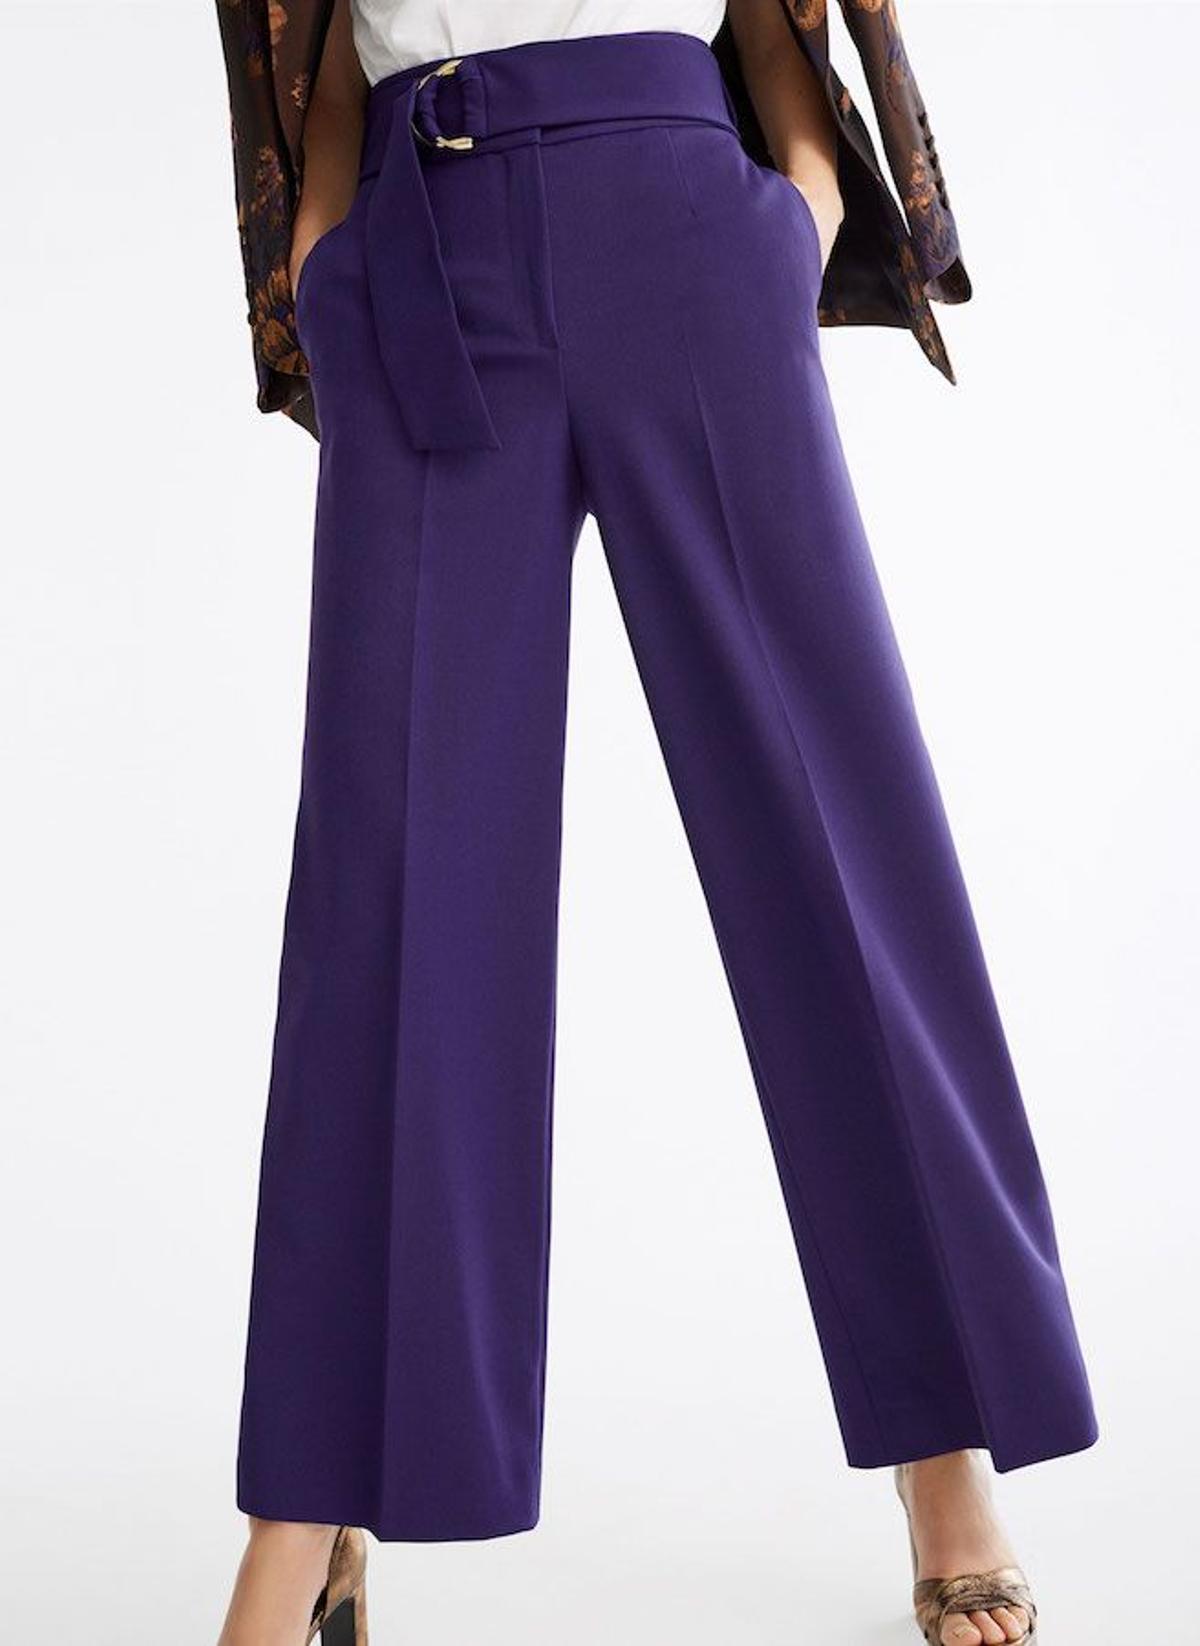 El pantalón violeta